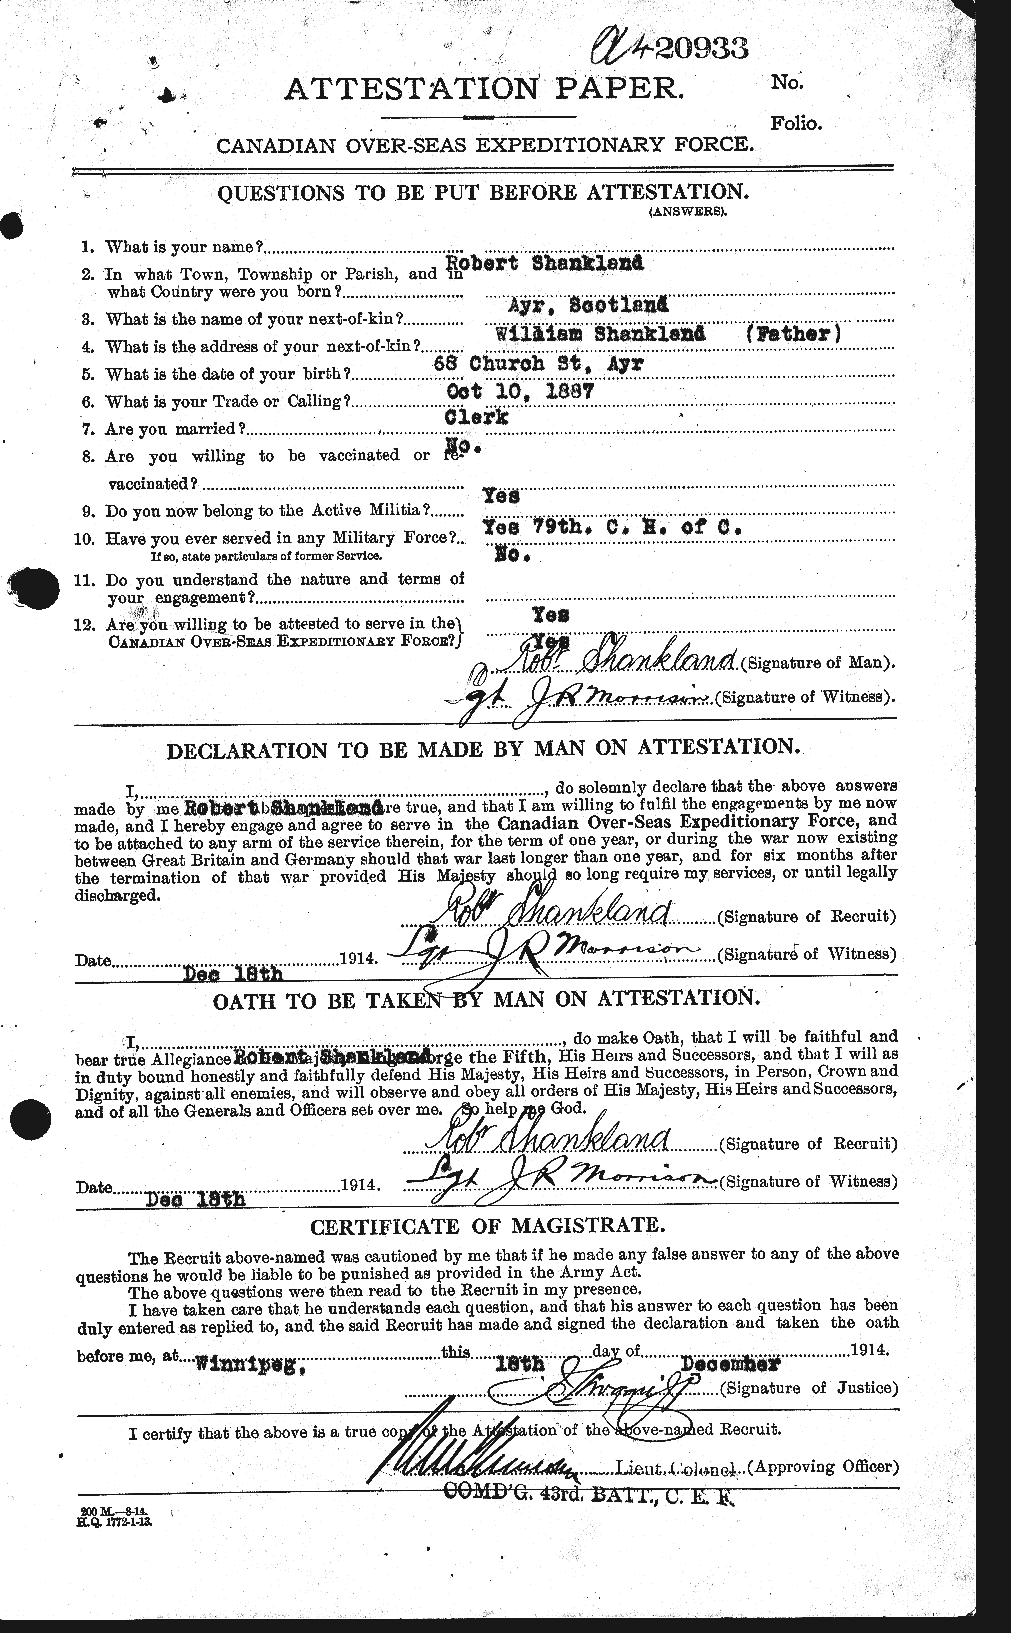 Dossiers du Personnel de la Première Guerre mondiale - CEC 089162a